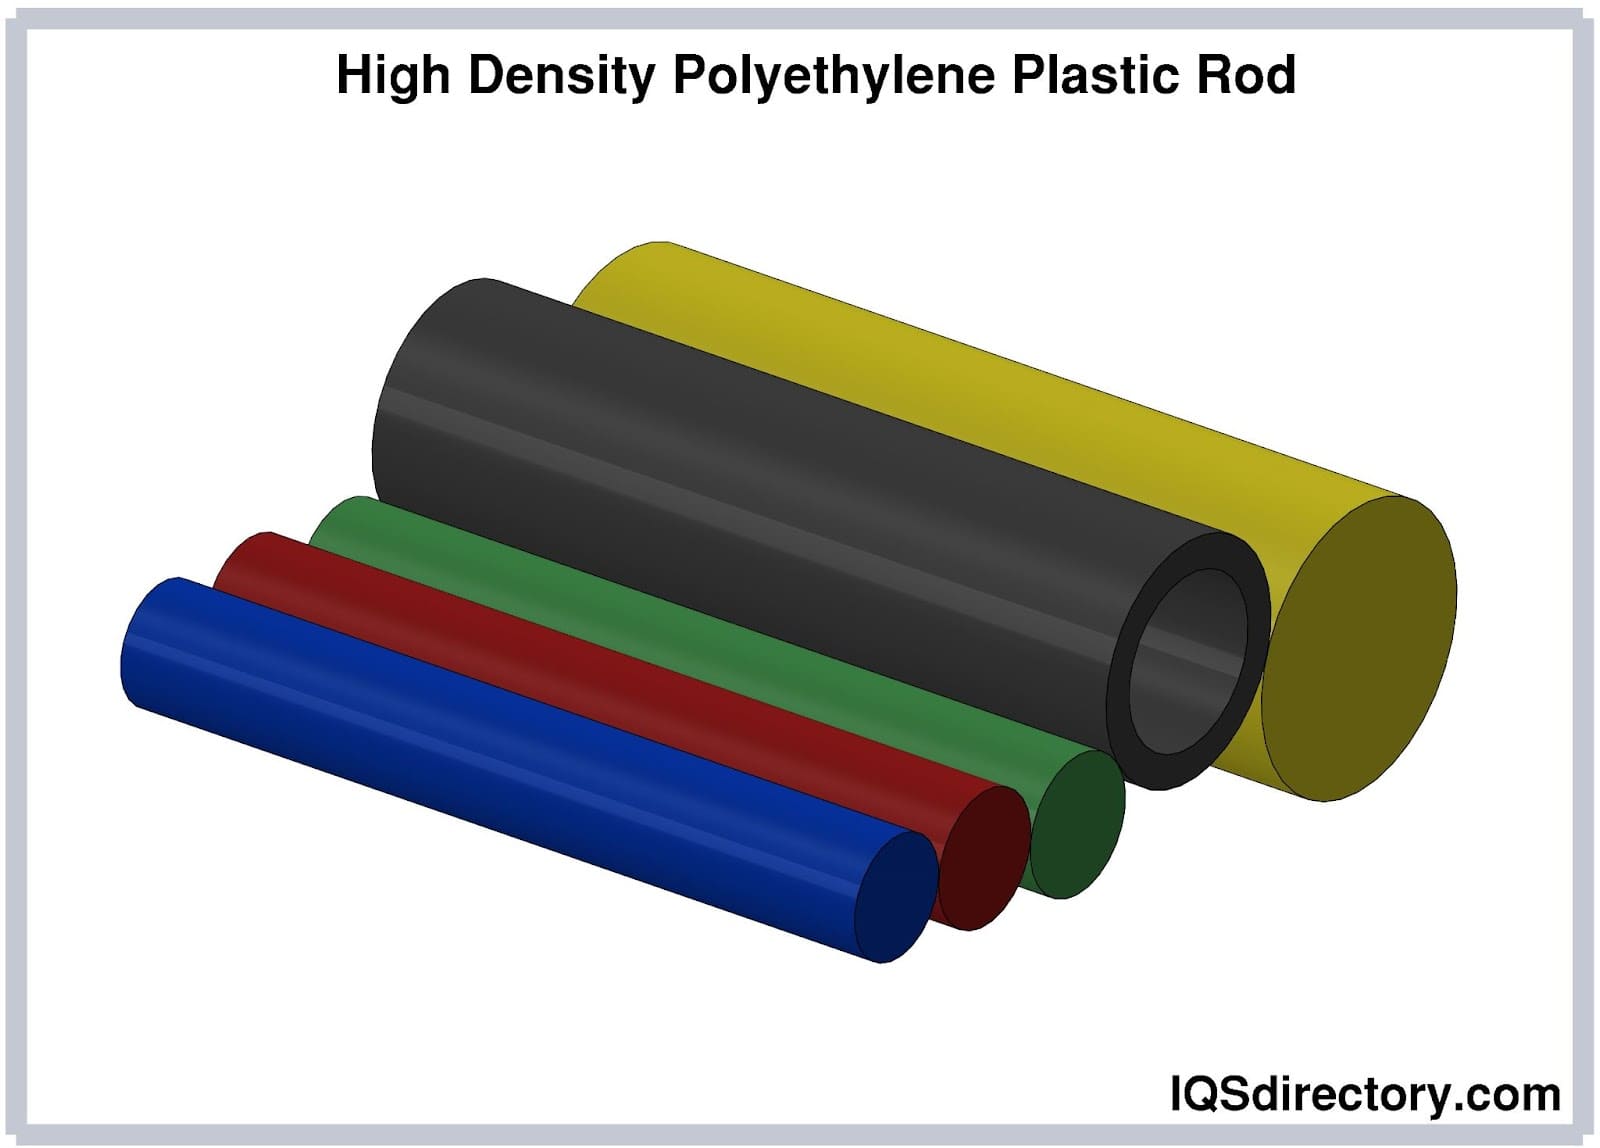 High Density Polyethylene Plastic Rod